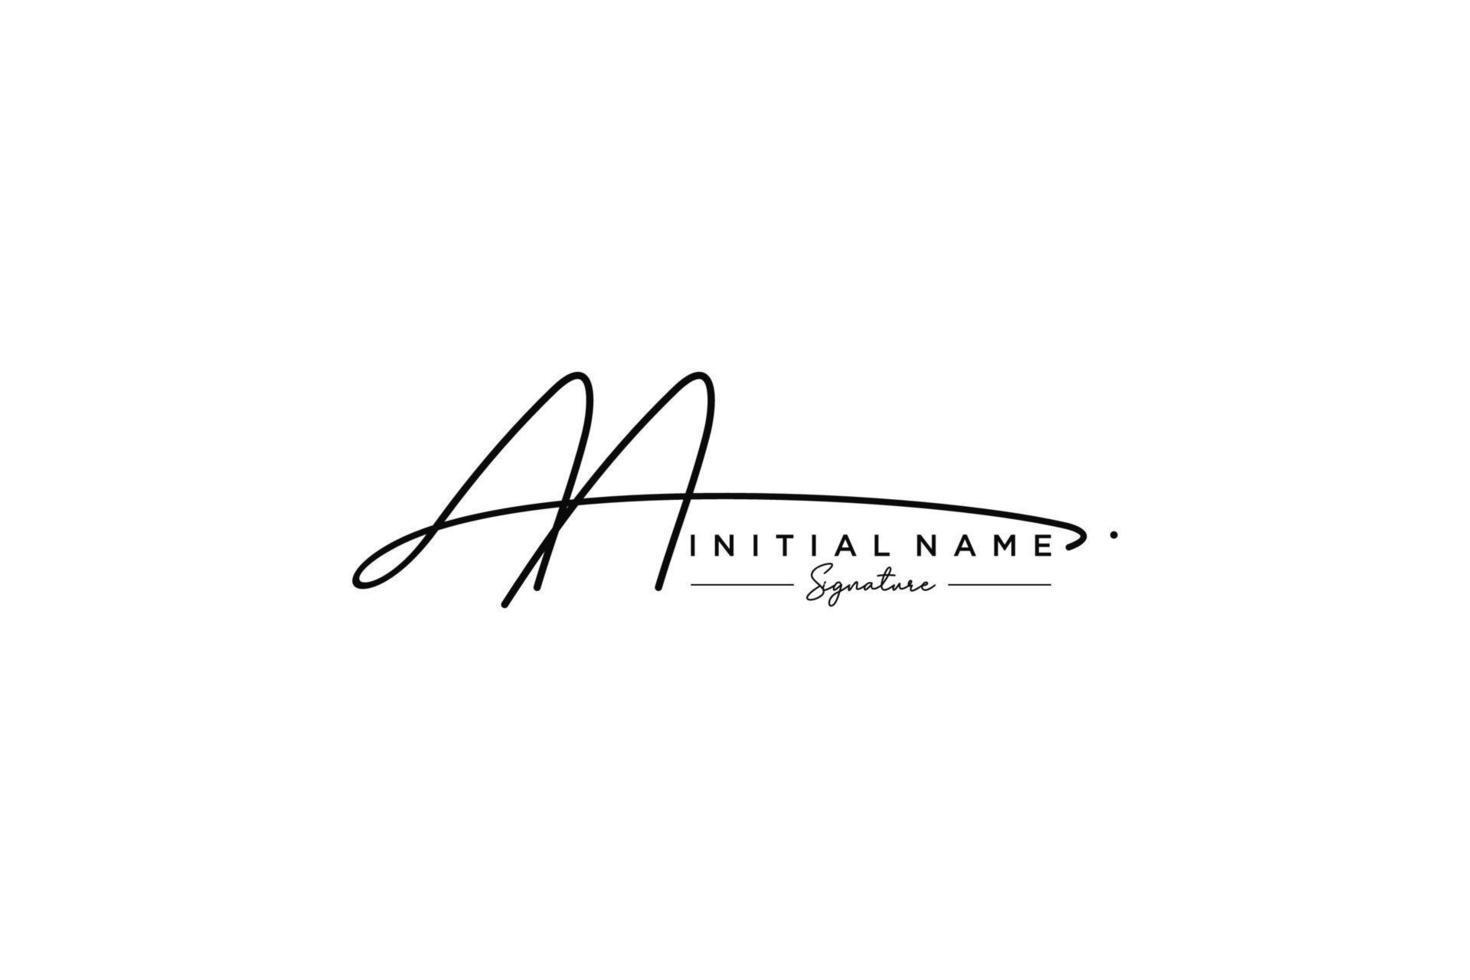 anfänglicher aa-Signatur-Logo-Vorlagenvektor. hand gezeichnete kalligraphiebeschriftungsvektorillustration. vektor